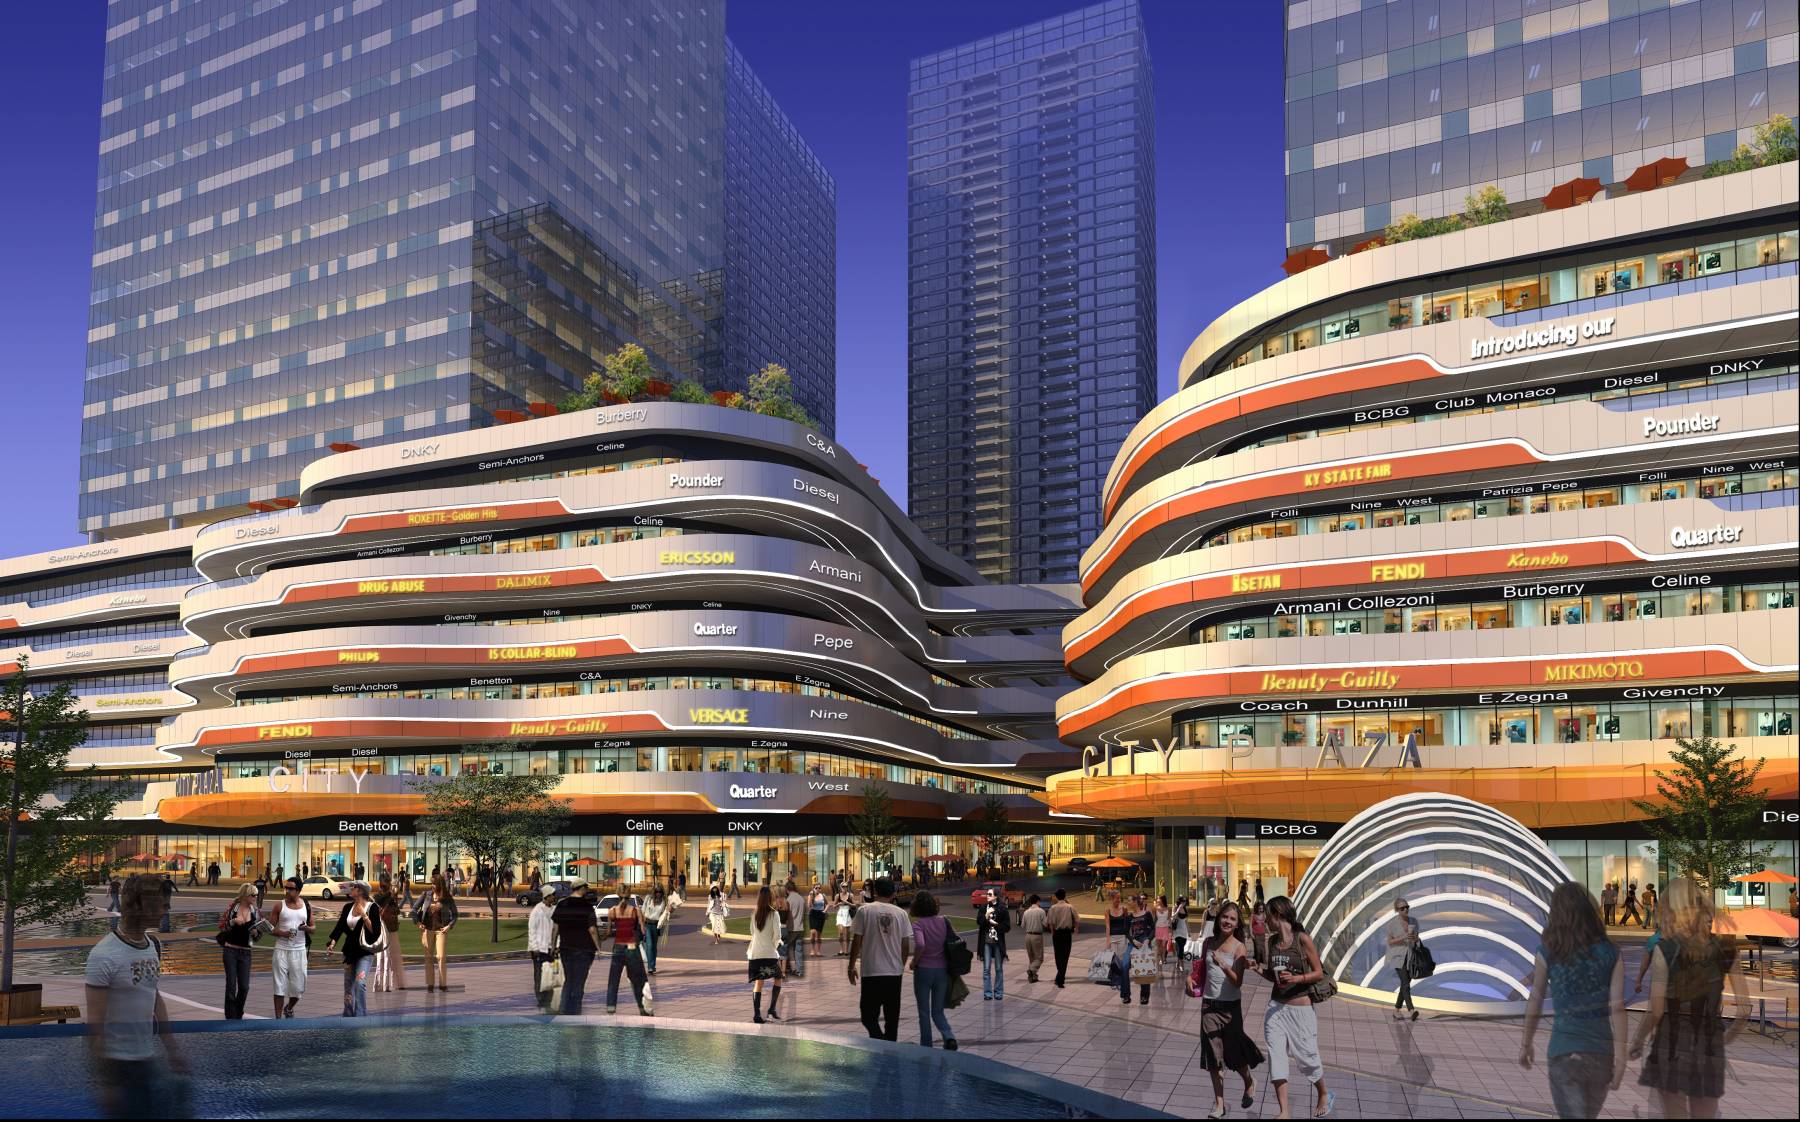 现代高层商业办公楼3dmax 模型下载-光辉城市